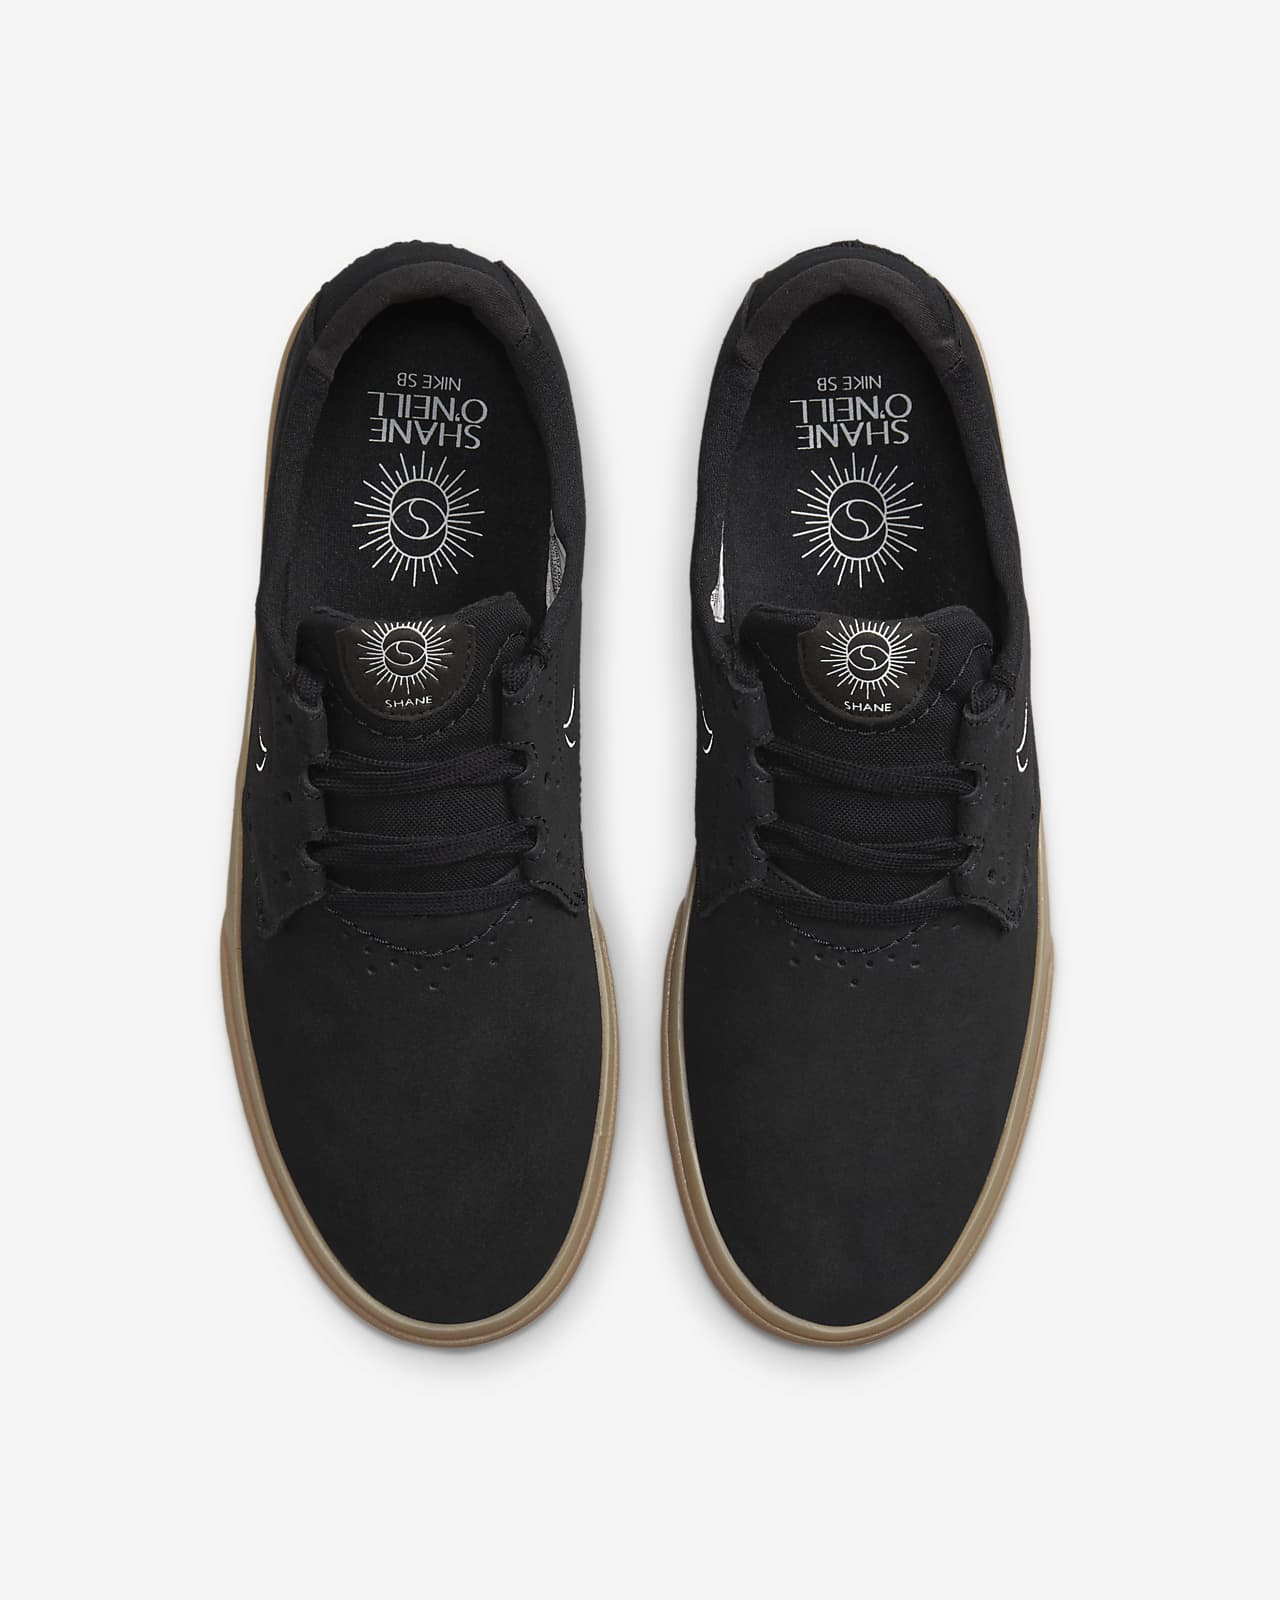 nike sb shane dark grey & gum skate shoes